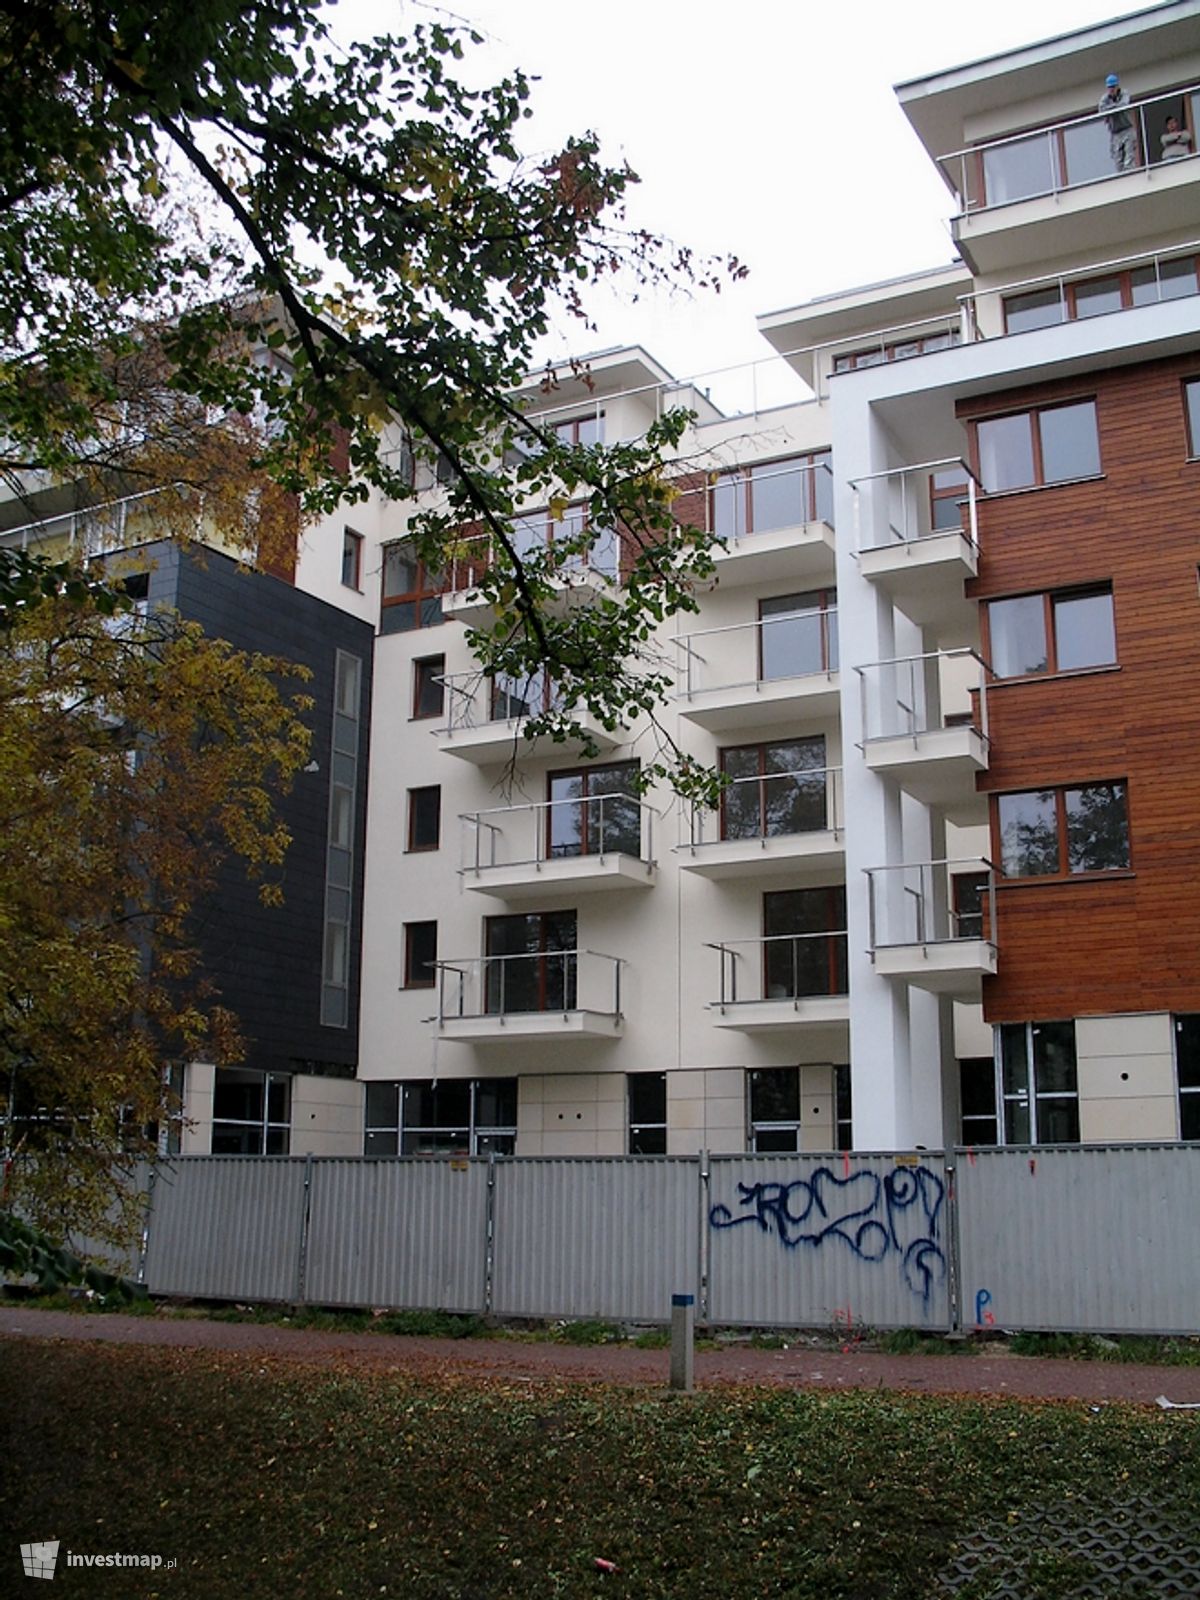 Zdjęcie [Kielce] Budynek apartamentowy "Promenada Solna" fot. Letkowski 